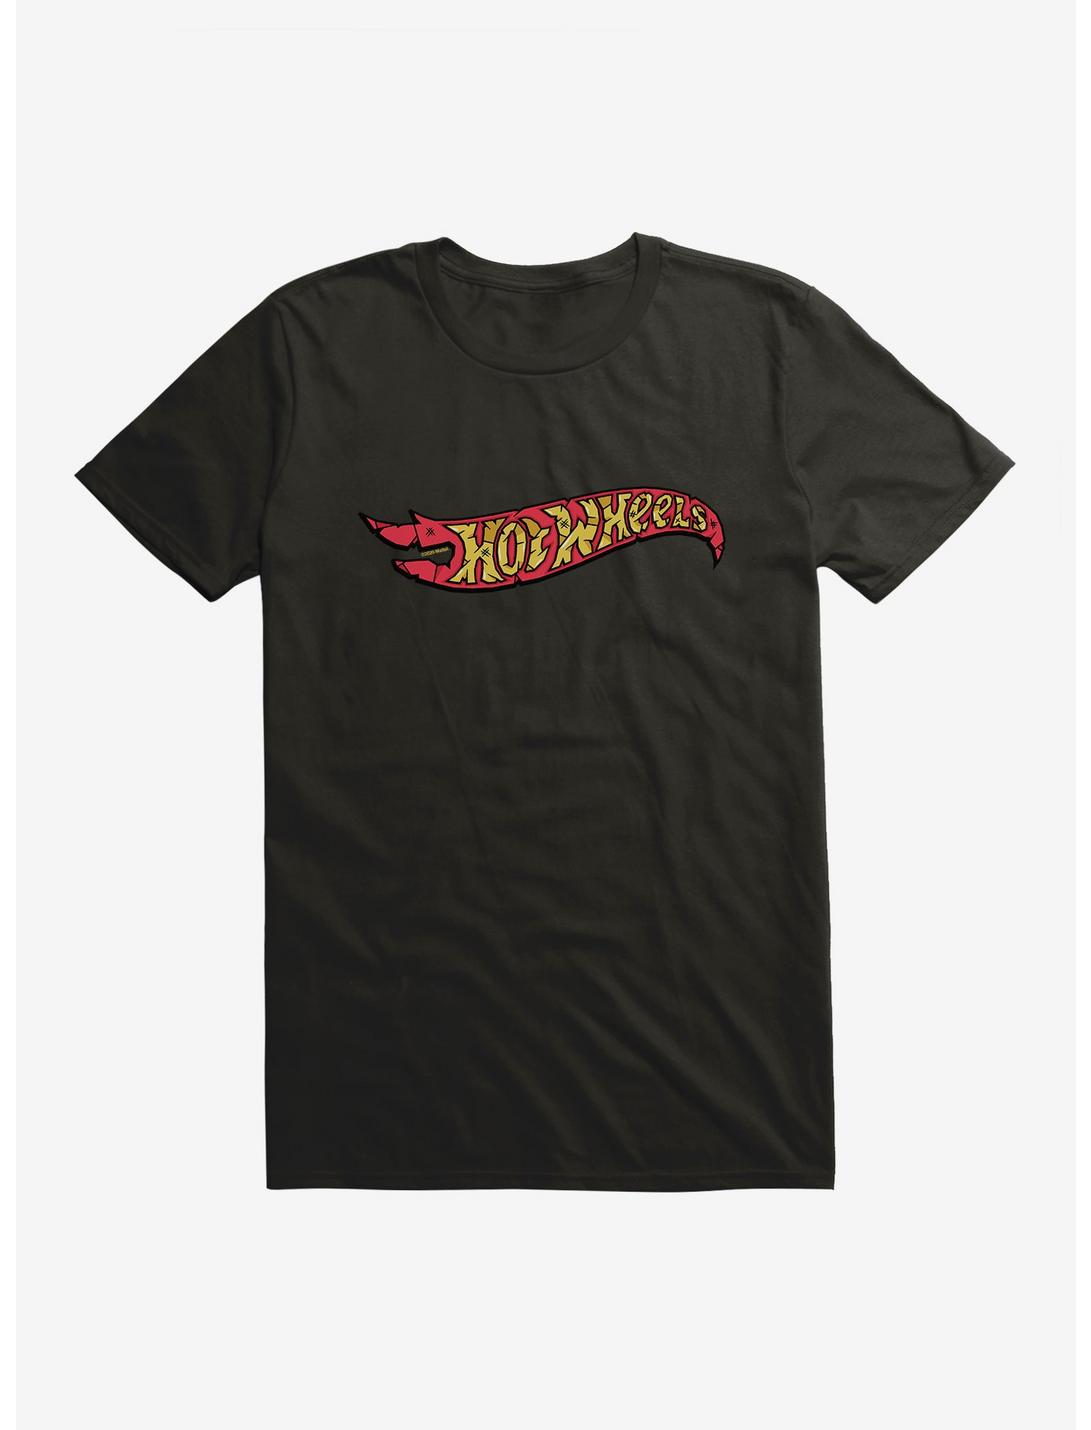 Hot Wheels Distressed Logo T-Shirt, BLACK, hi-res